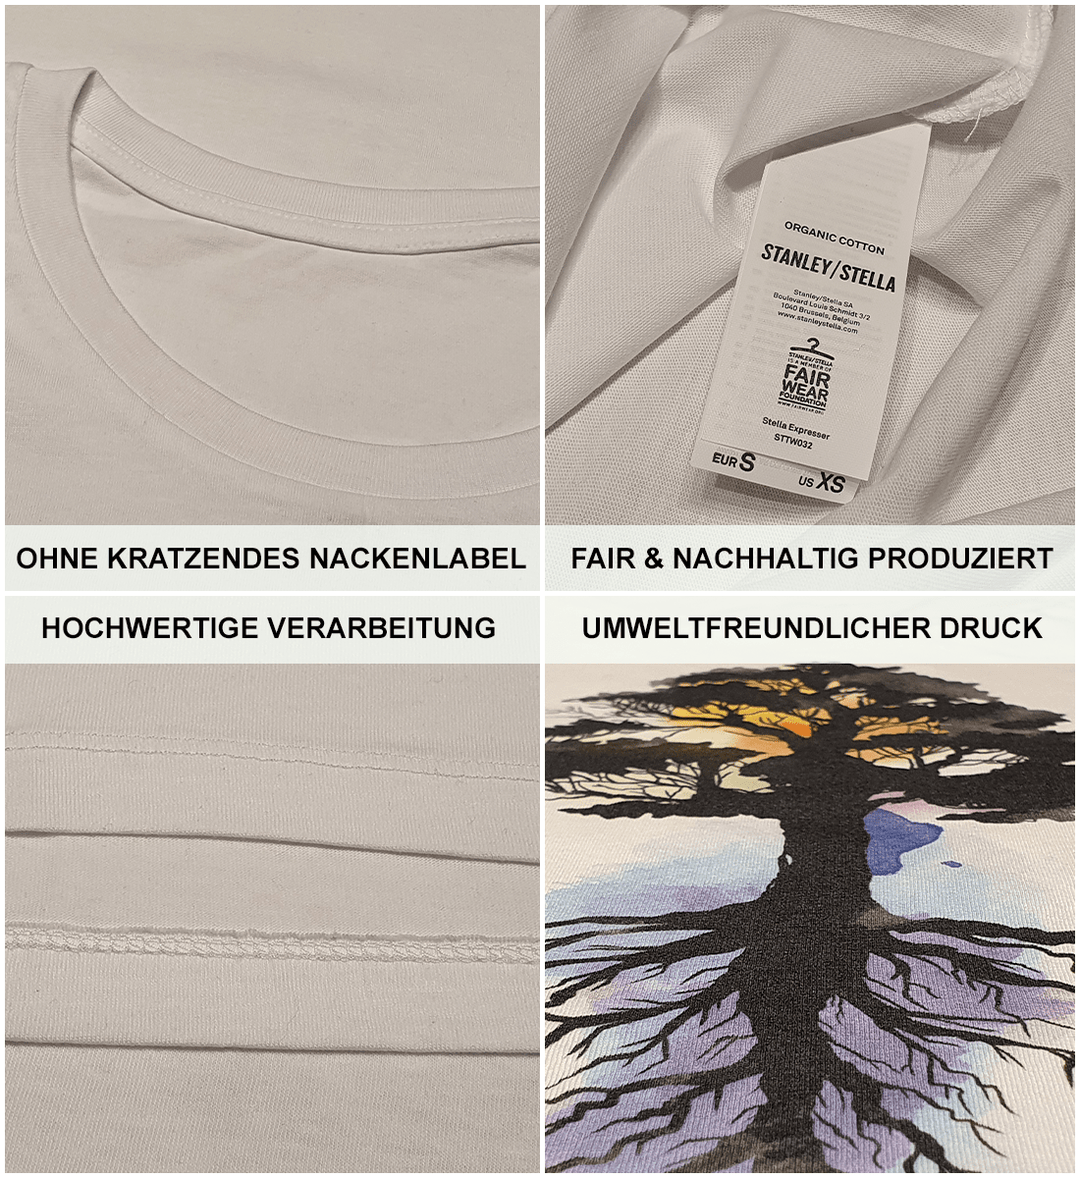 Baum Mondphasen - Damen Premium Bio Shirt